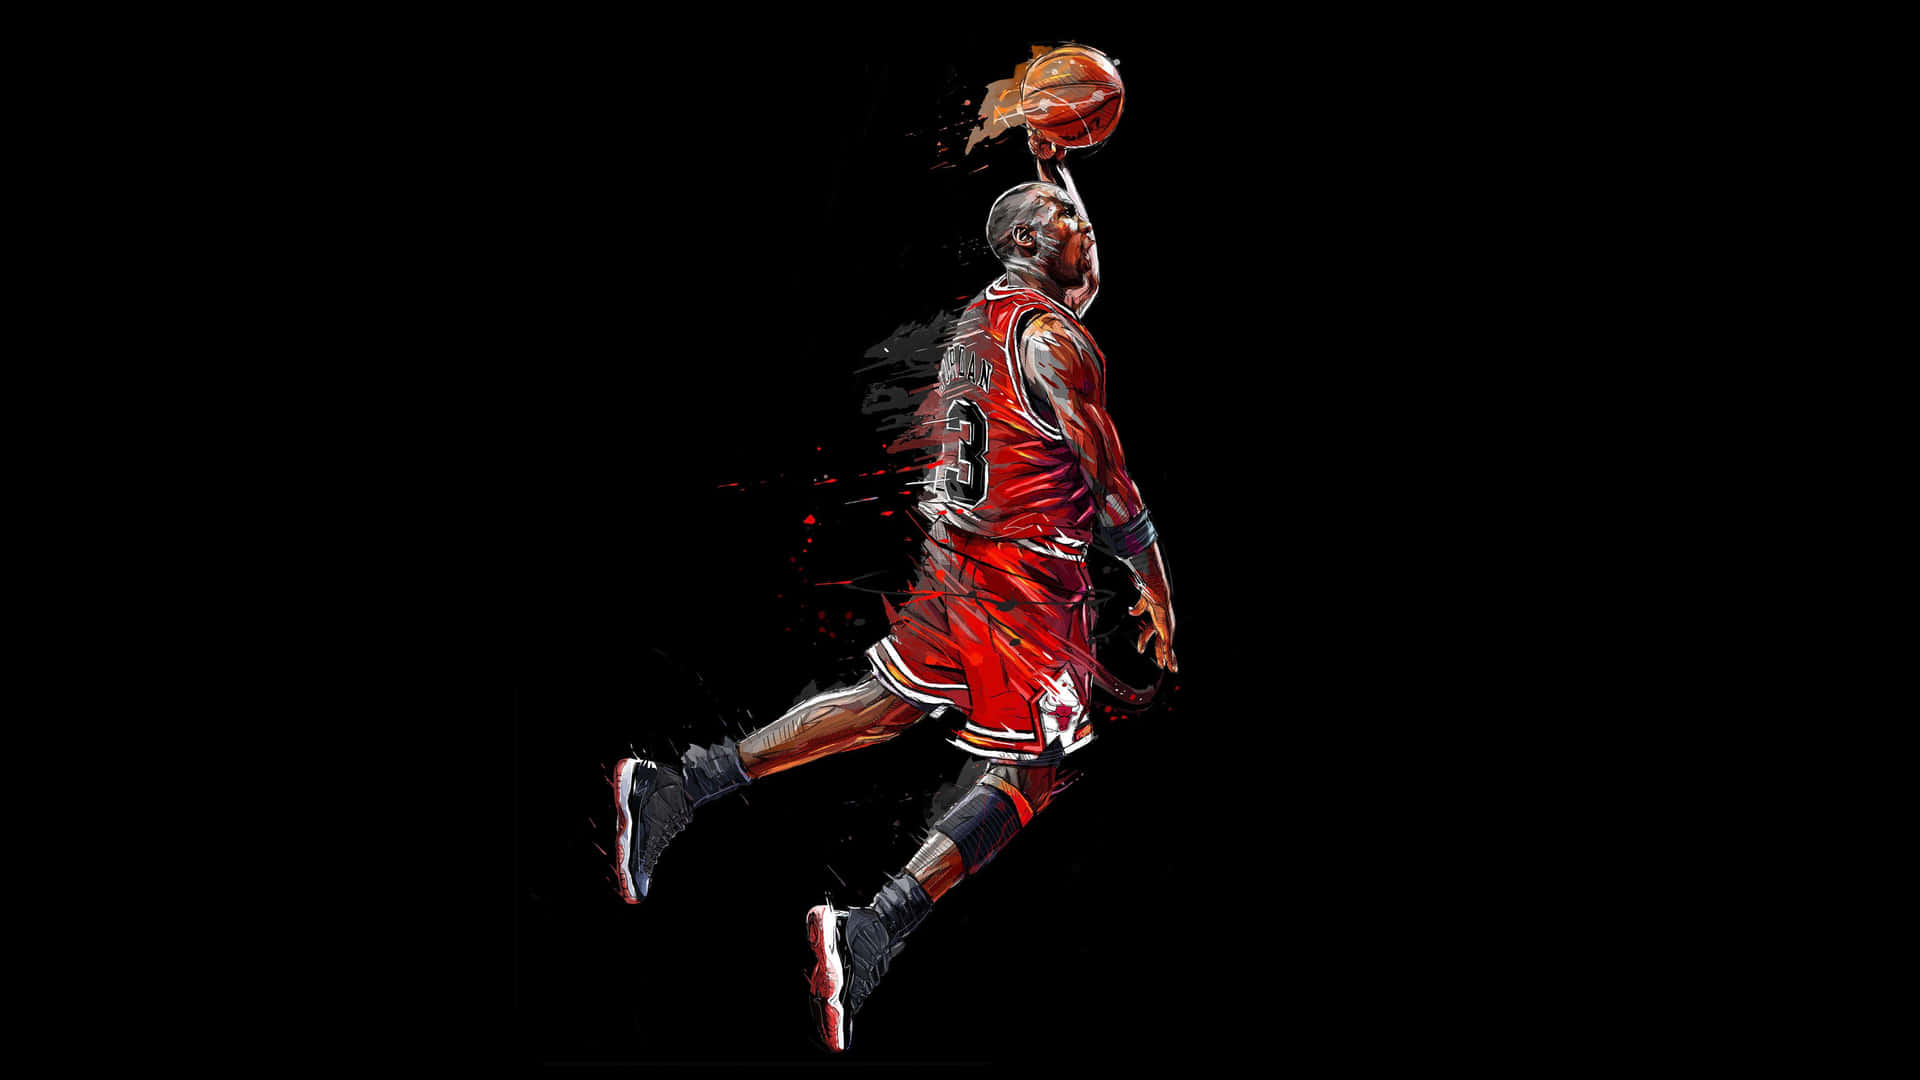 48 Cool Basketball Wallpaper Images  WallpaperSafari